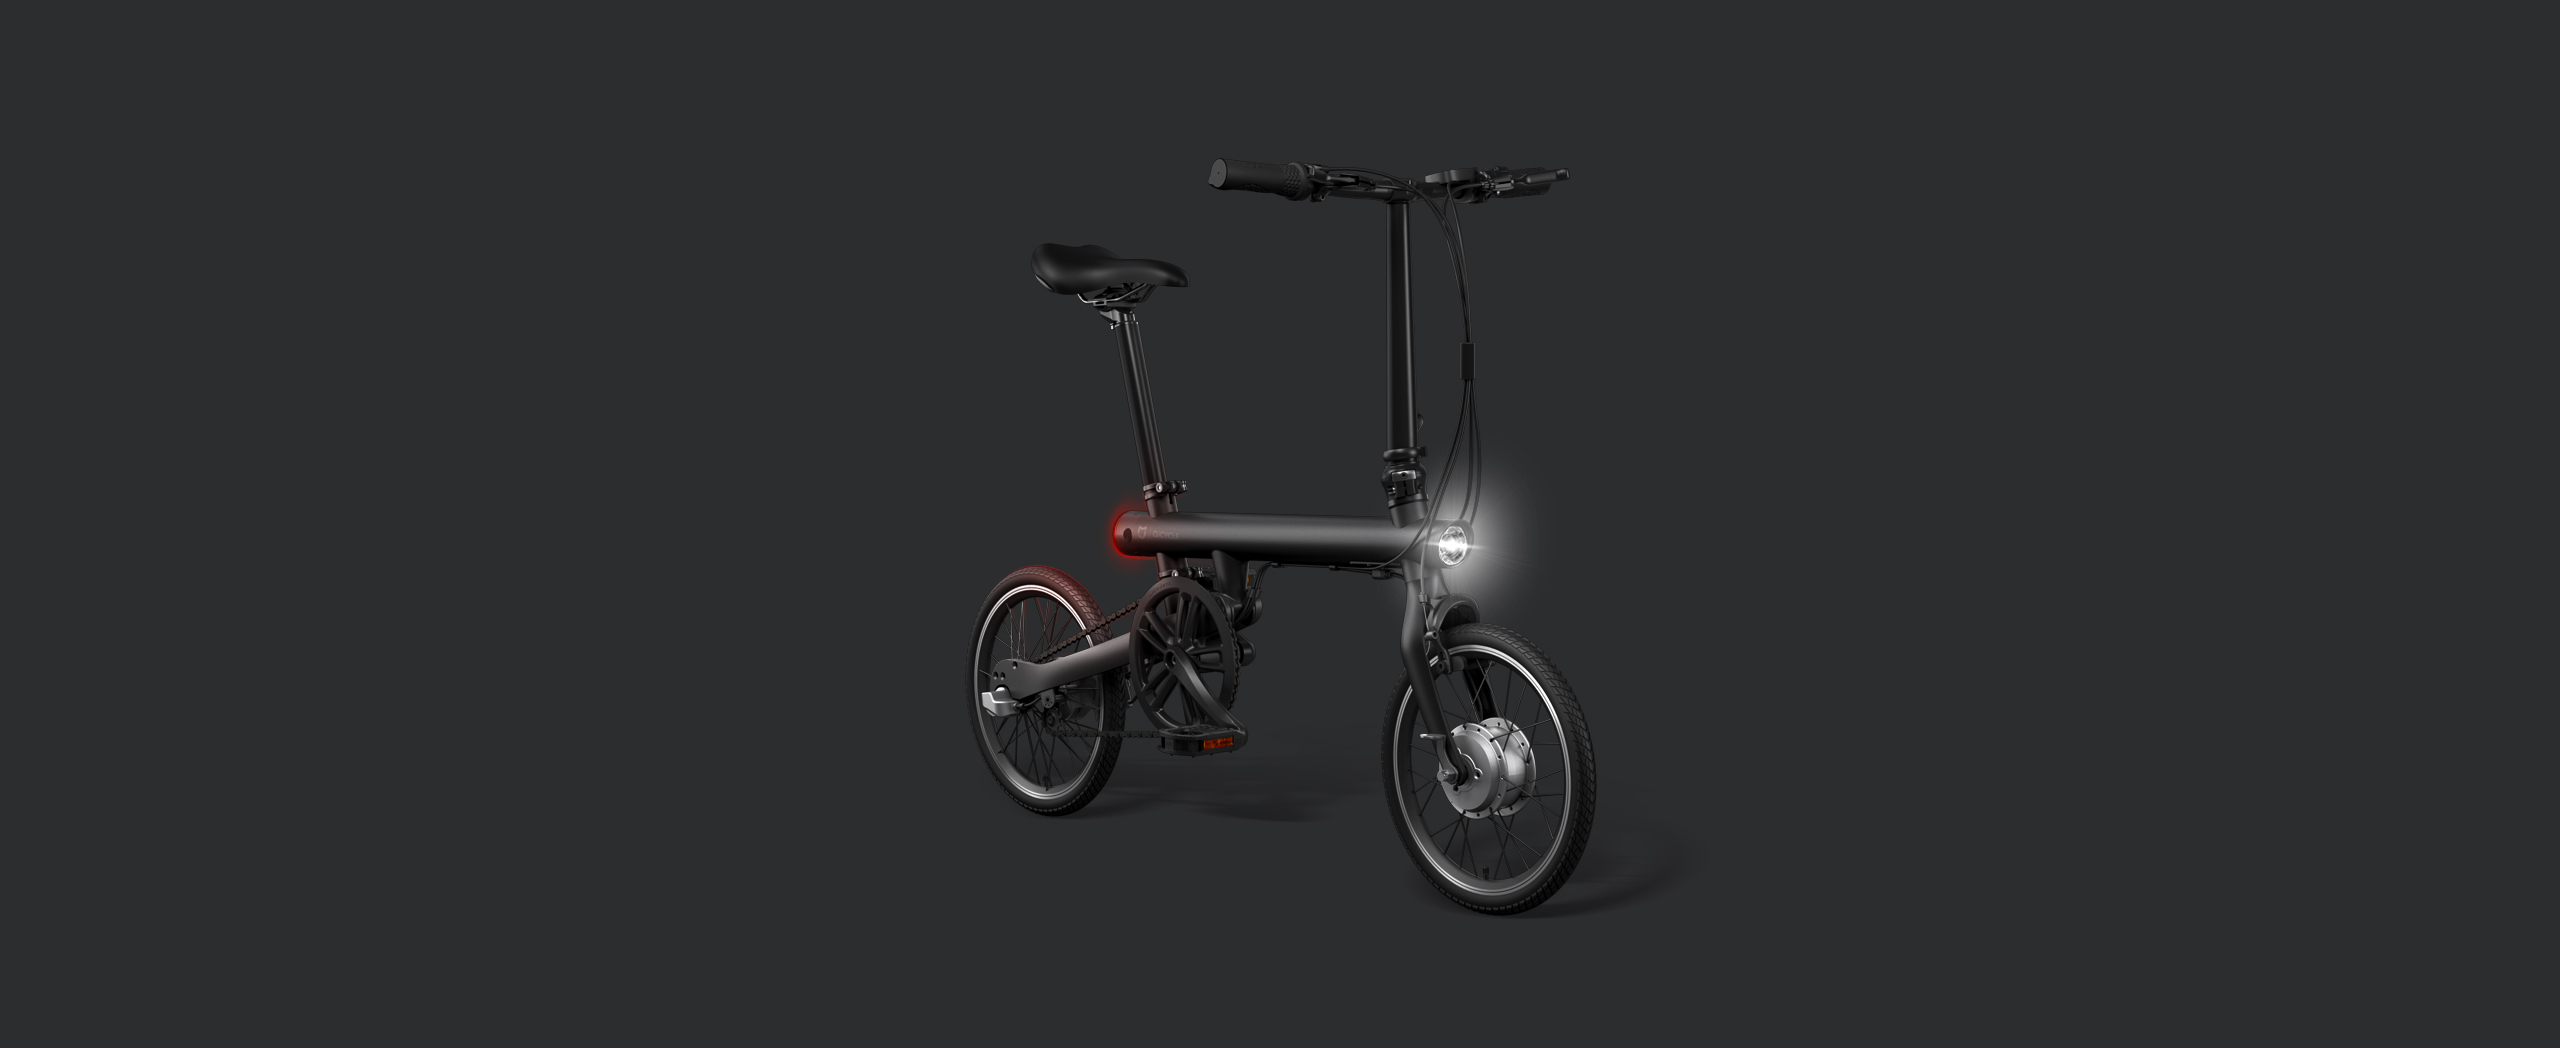 小米将推Baicycle小白单车，除了做百货还要布局共享单车？ 智能公会